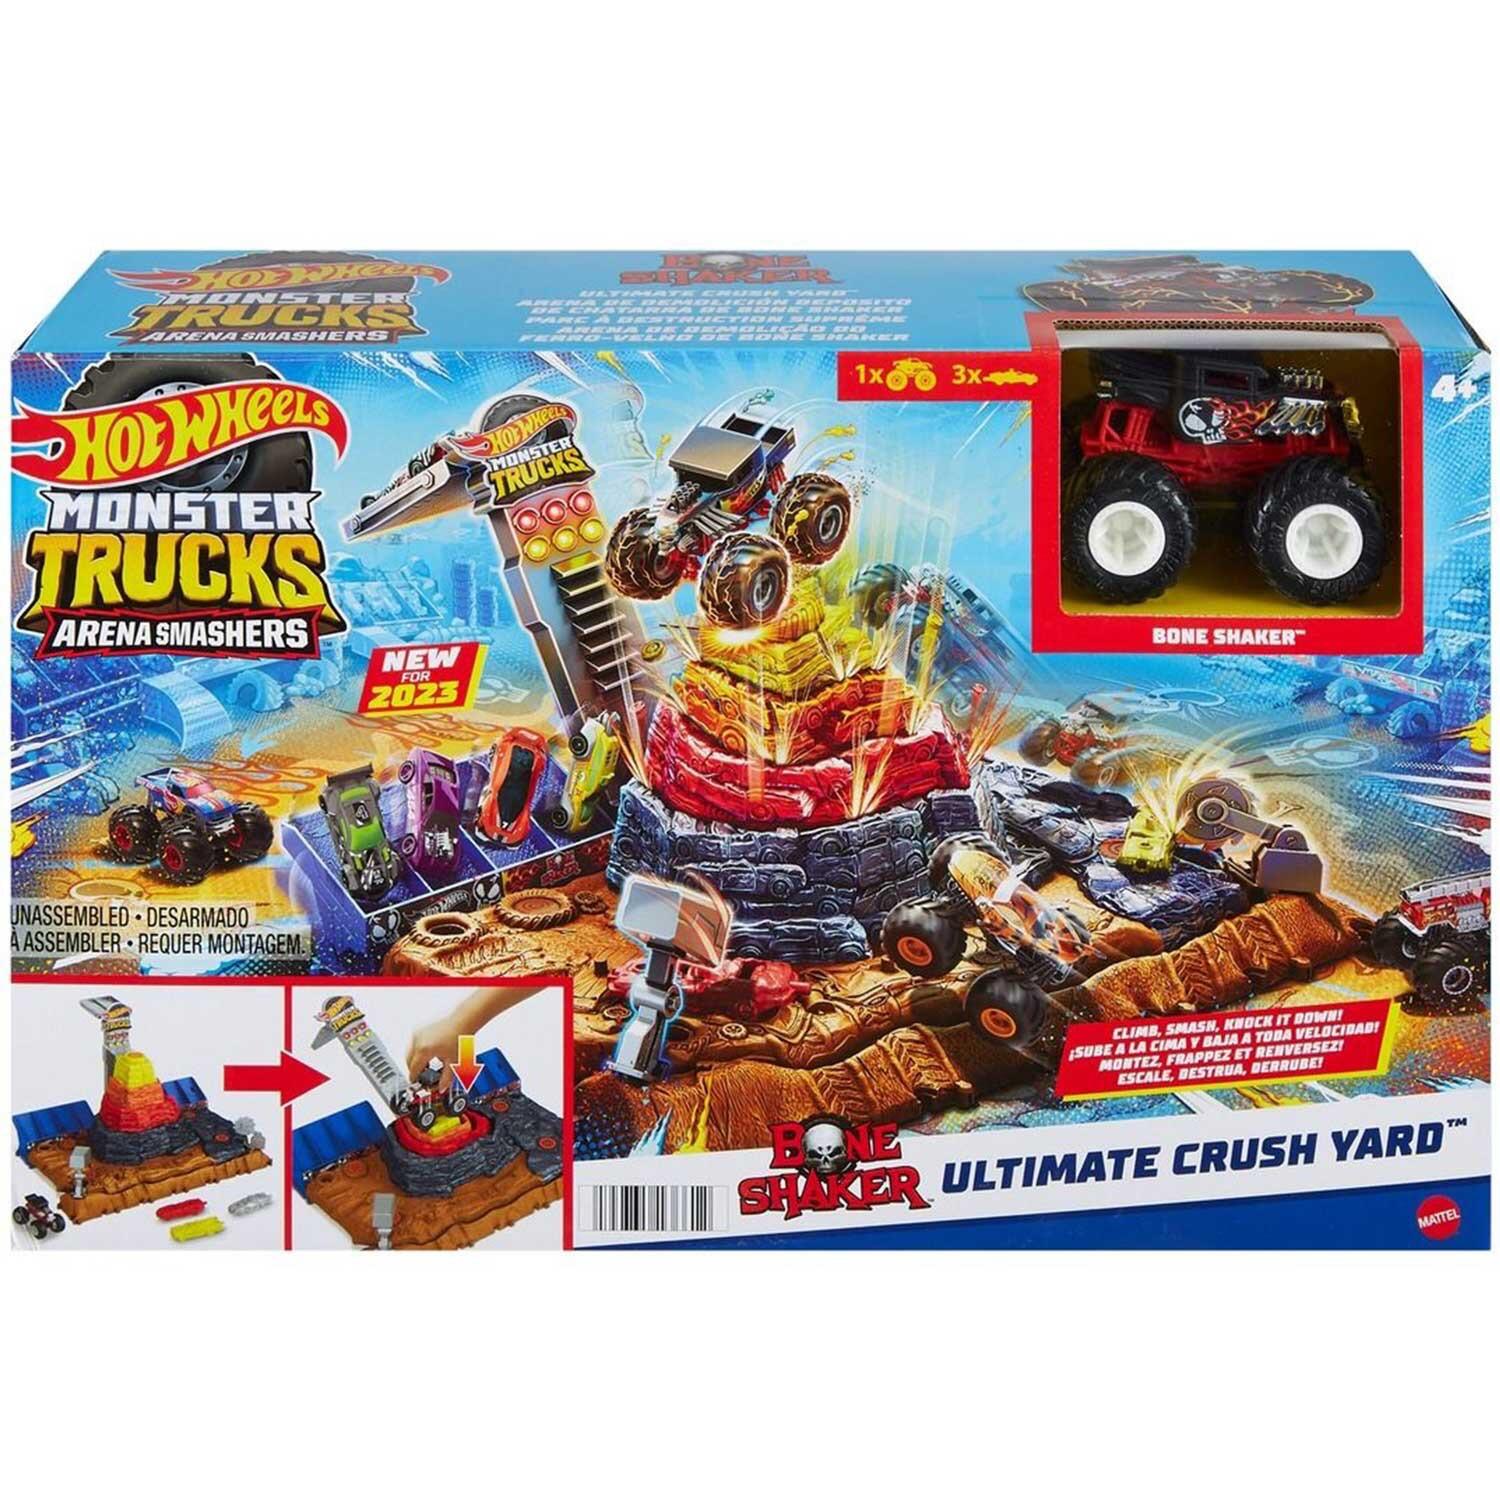 Hot Wheels Monster Trucks Arena Smashers Boneshaker Ultimate Crush Yard Playset